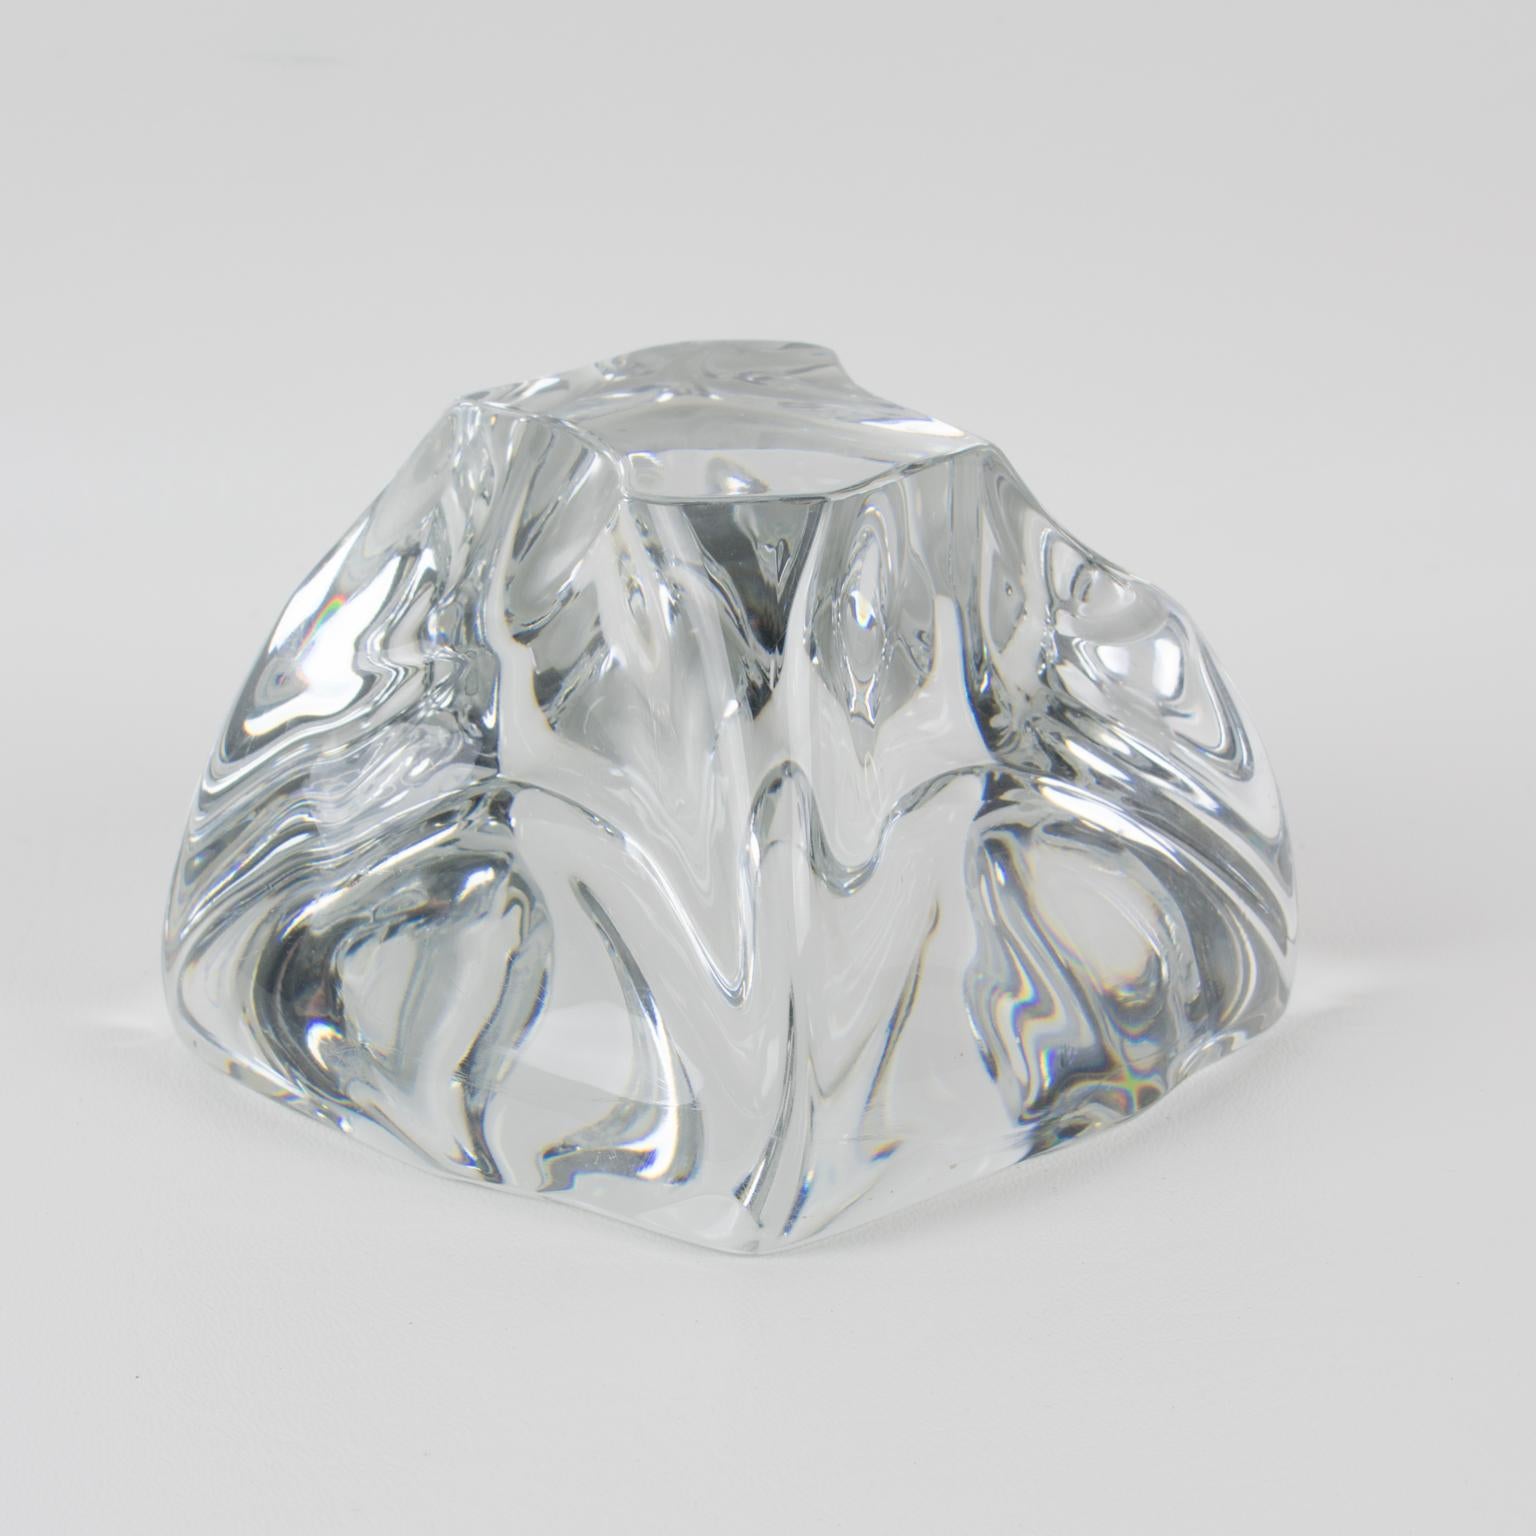 Dieser atemberaubende abstrakte Kristall-Briefbeschwerer in Freiform ist von Daum, Frankreich. Die Skulptur zeigt ein französisches Design aus den 1950er Jahren mit einem mundgeblasenen klaren Kristall in einer abstrakten Figur in einer